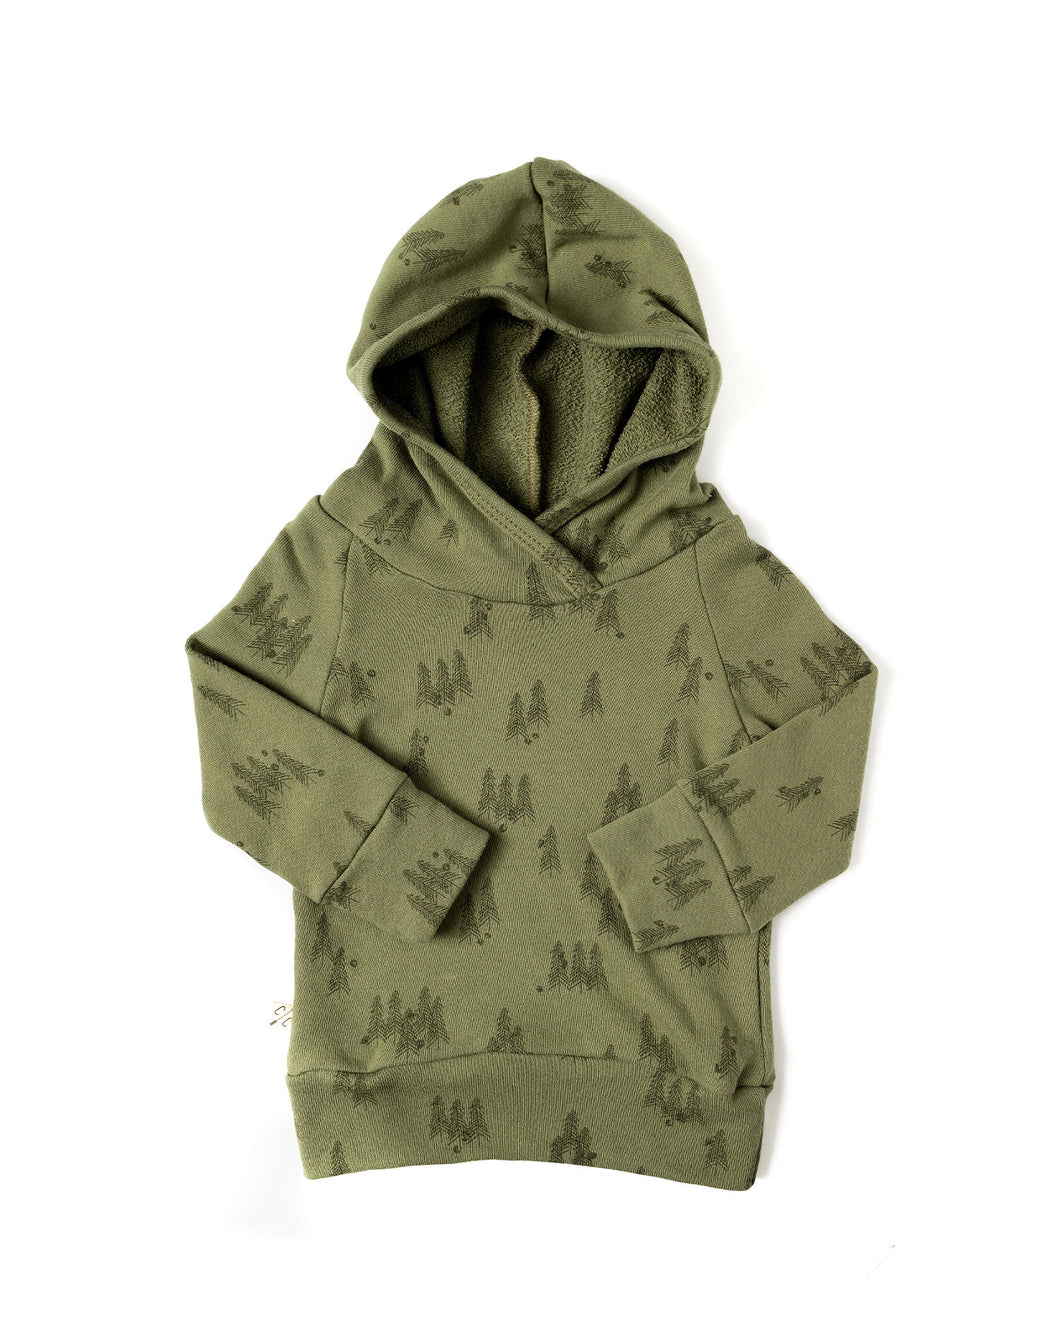 trademark raglan hoodie - trees on olive